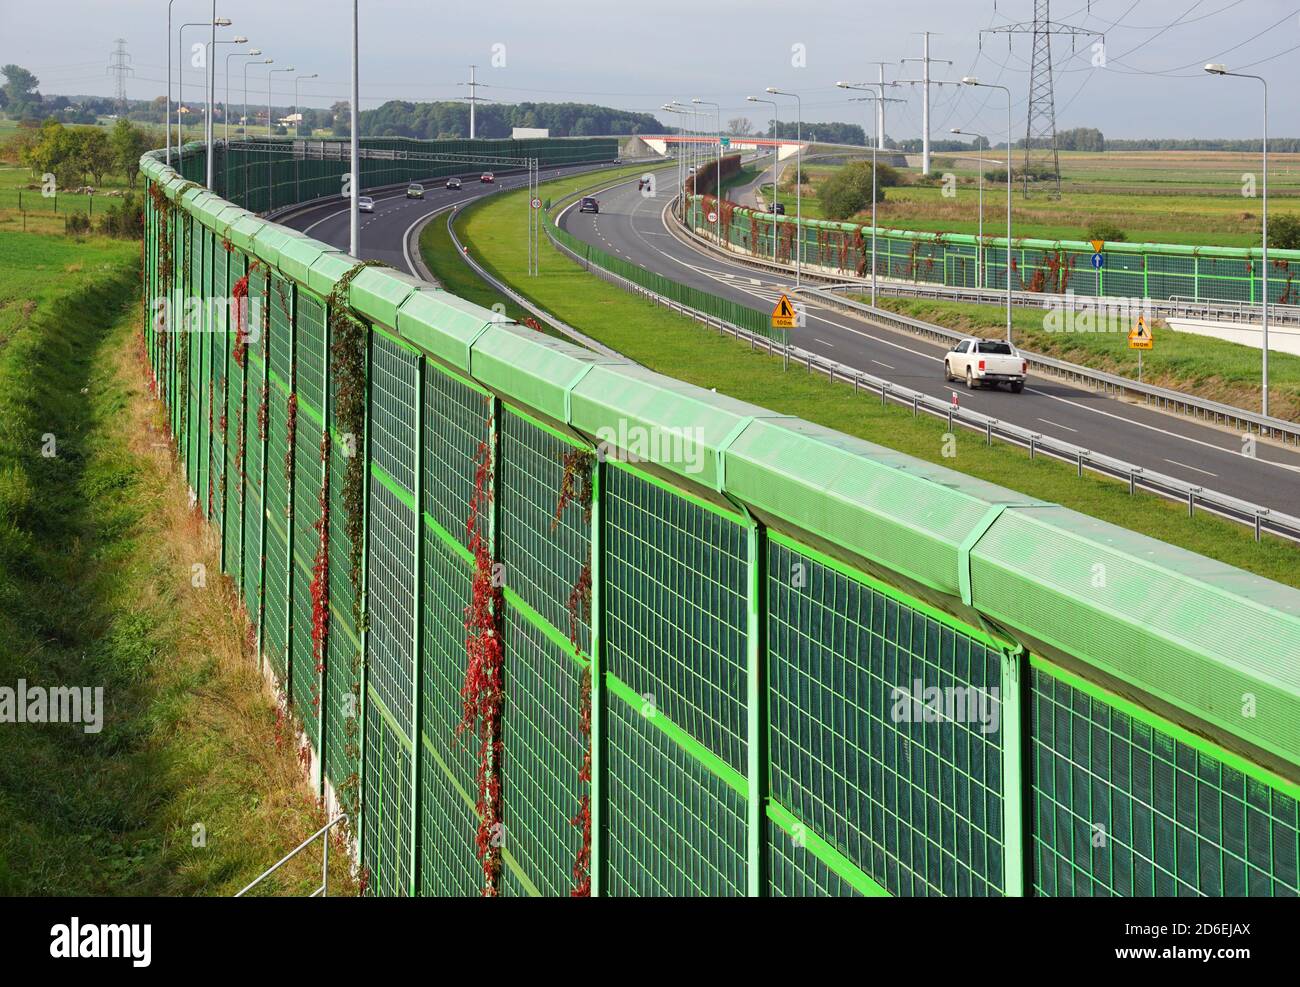 L'autostrada è protetta su entrambi i lati da barriere antirumore. Le barriere proteggono i residenti locali dal rumore del traffico. Foto Stock